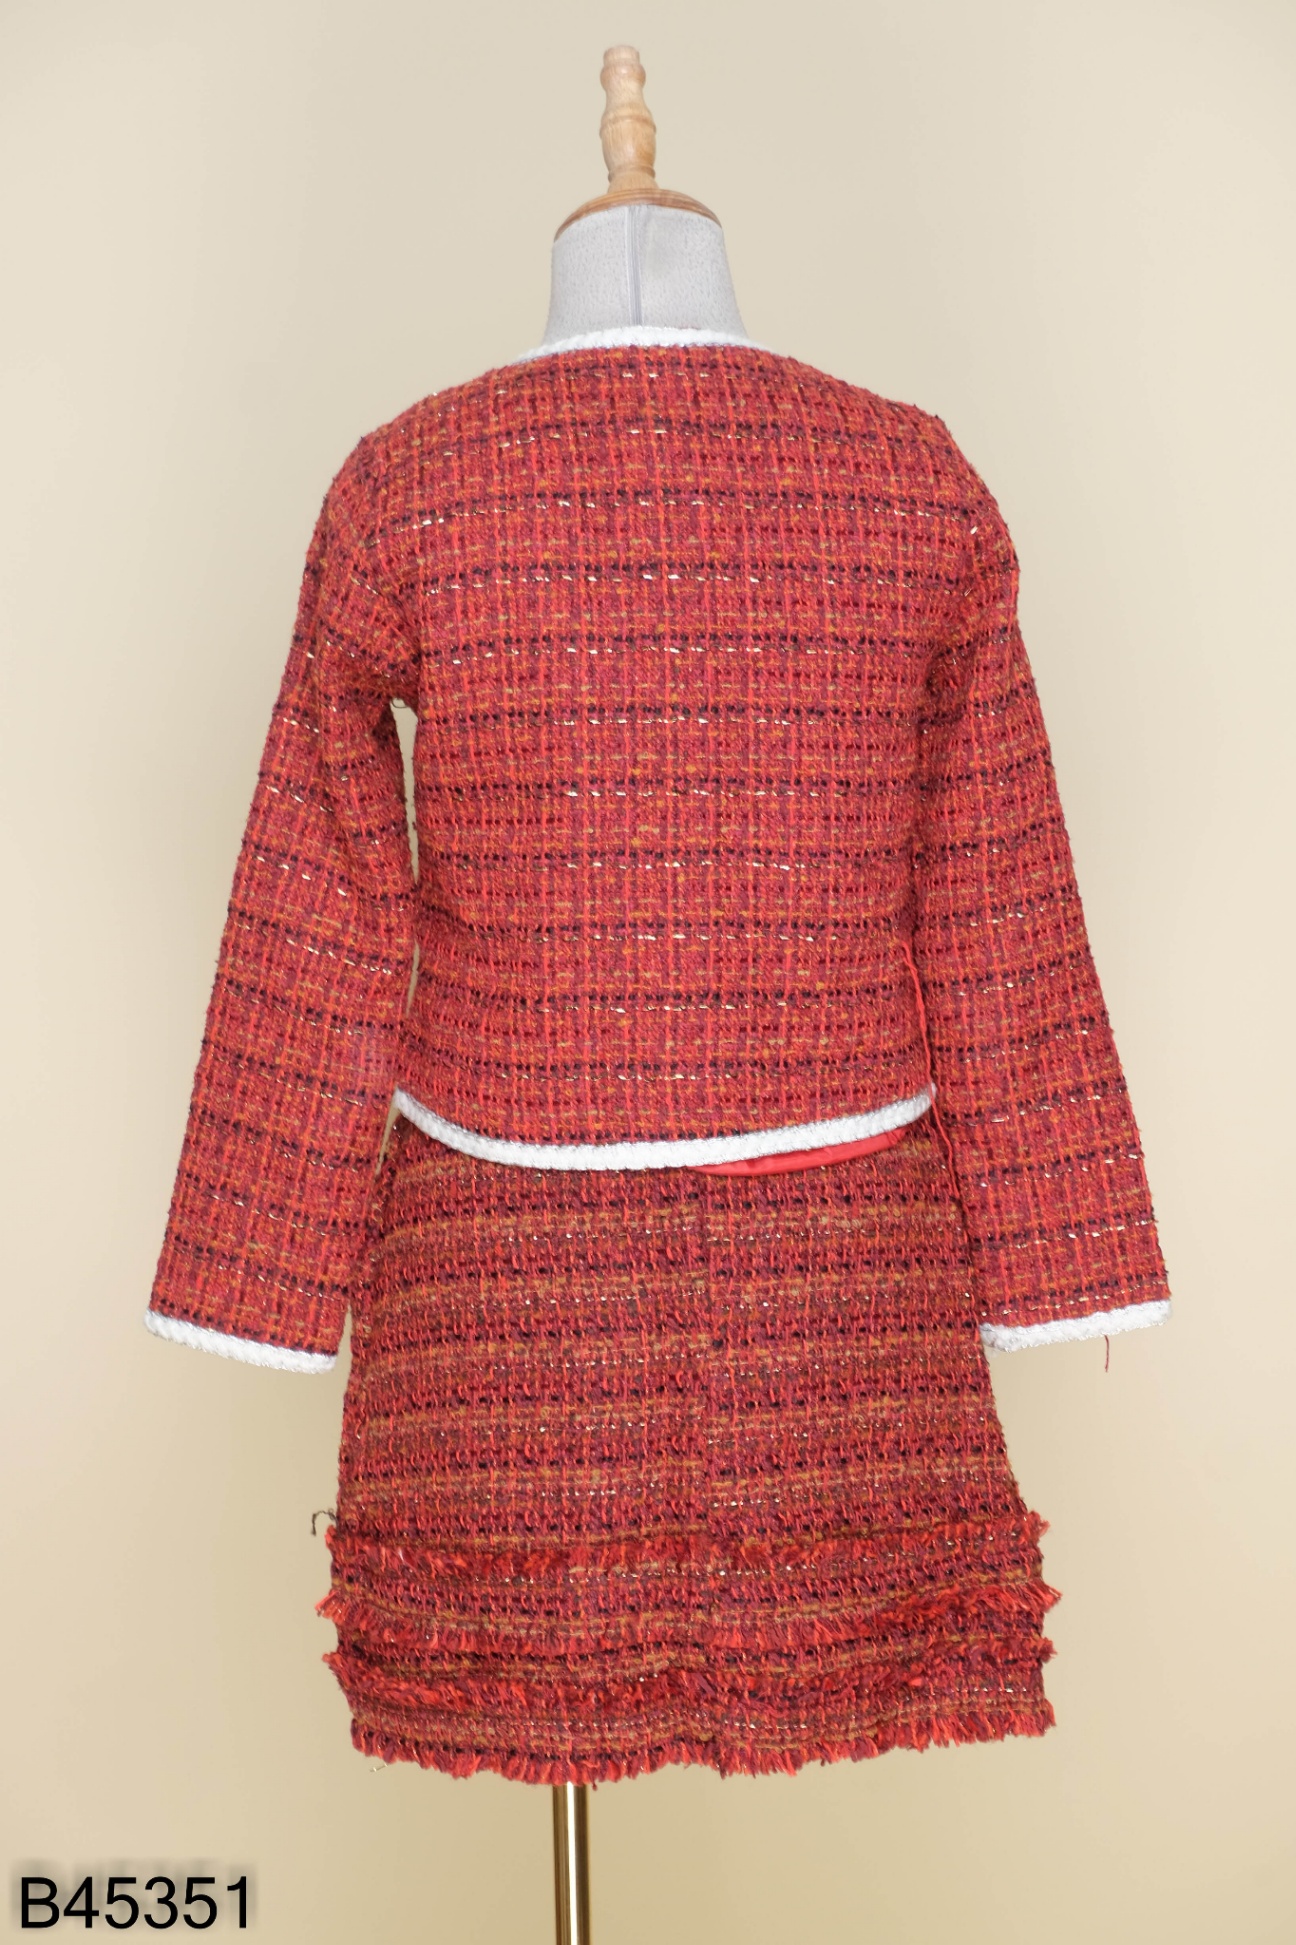 NEW ARRIVAL - WINTER JOY BST chất liệu dạ tweed & dạ ép lông cừu cao c –  Thời trang Pantio